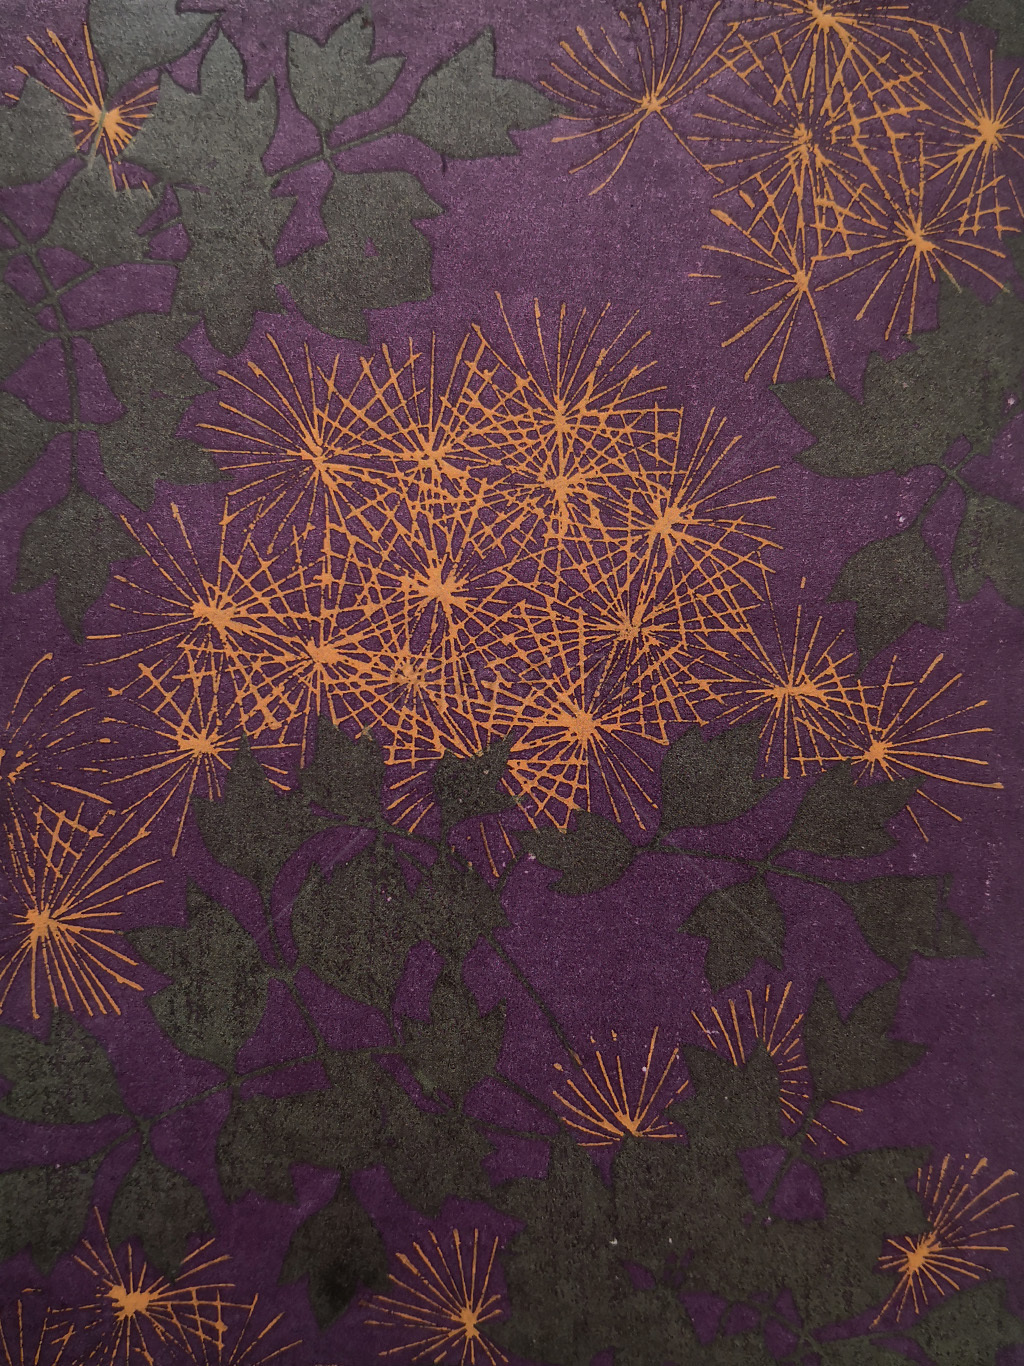  传统 水彩手绘  抽象花卉草木 底图底纹  图案背景贴图